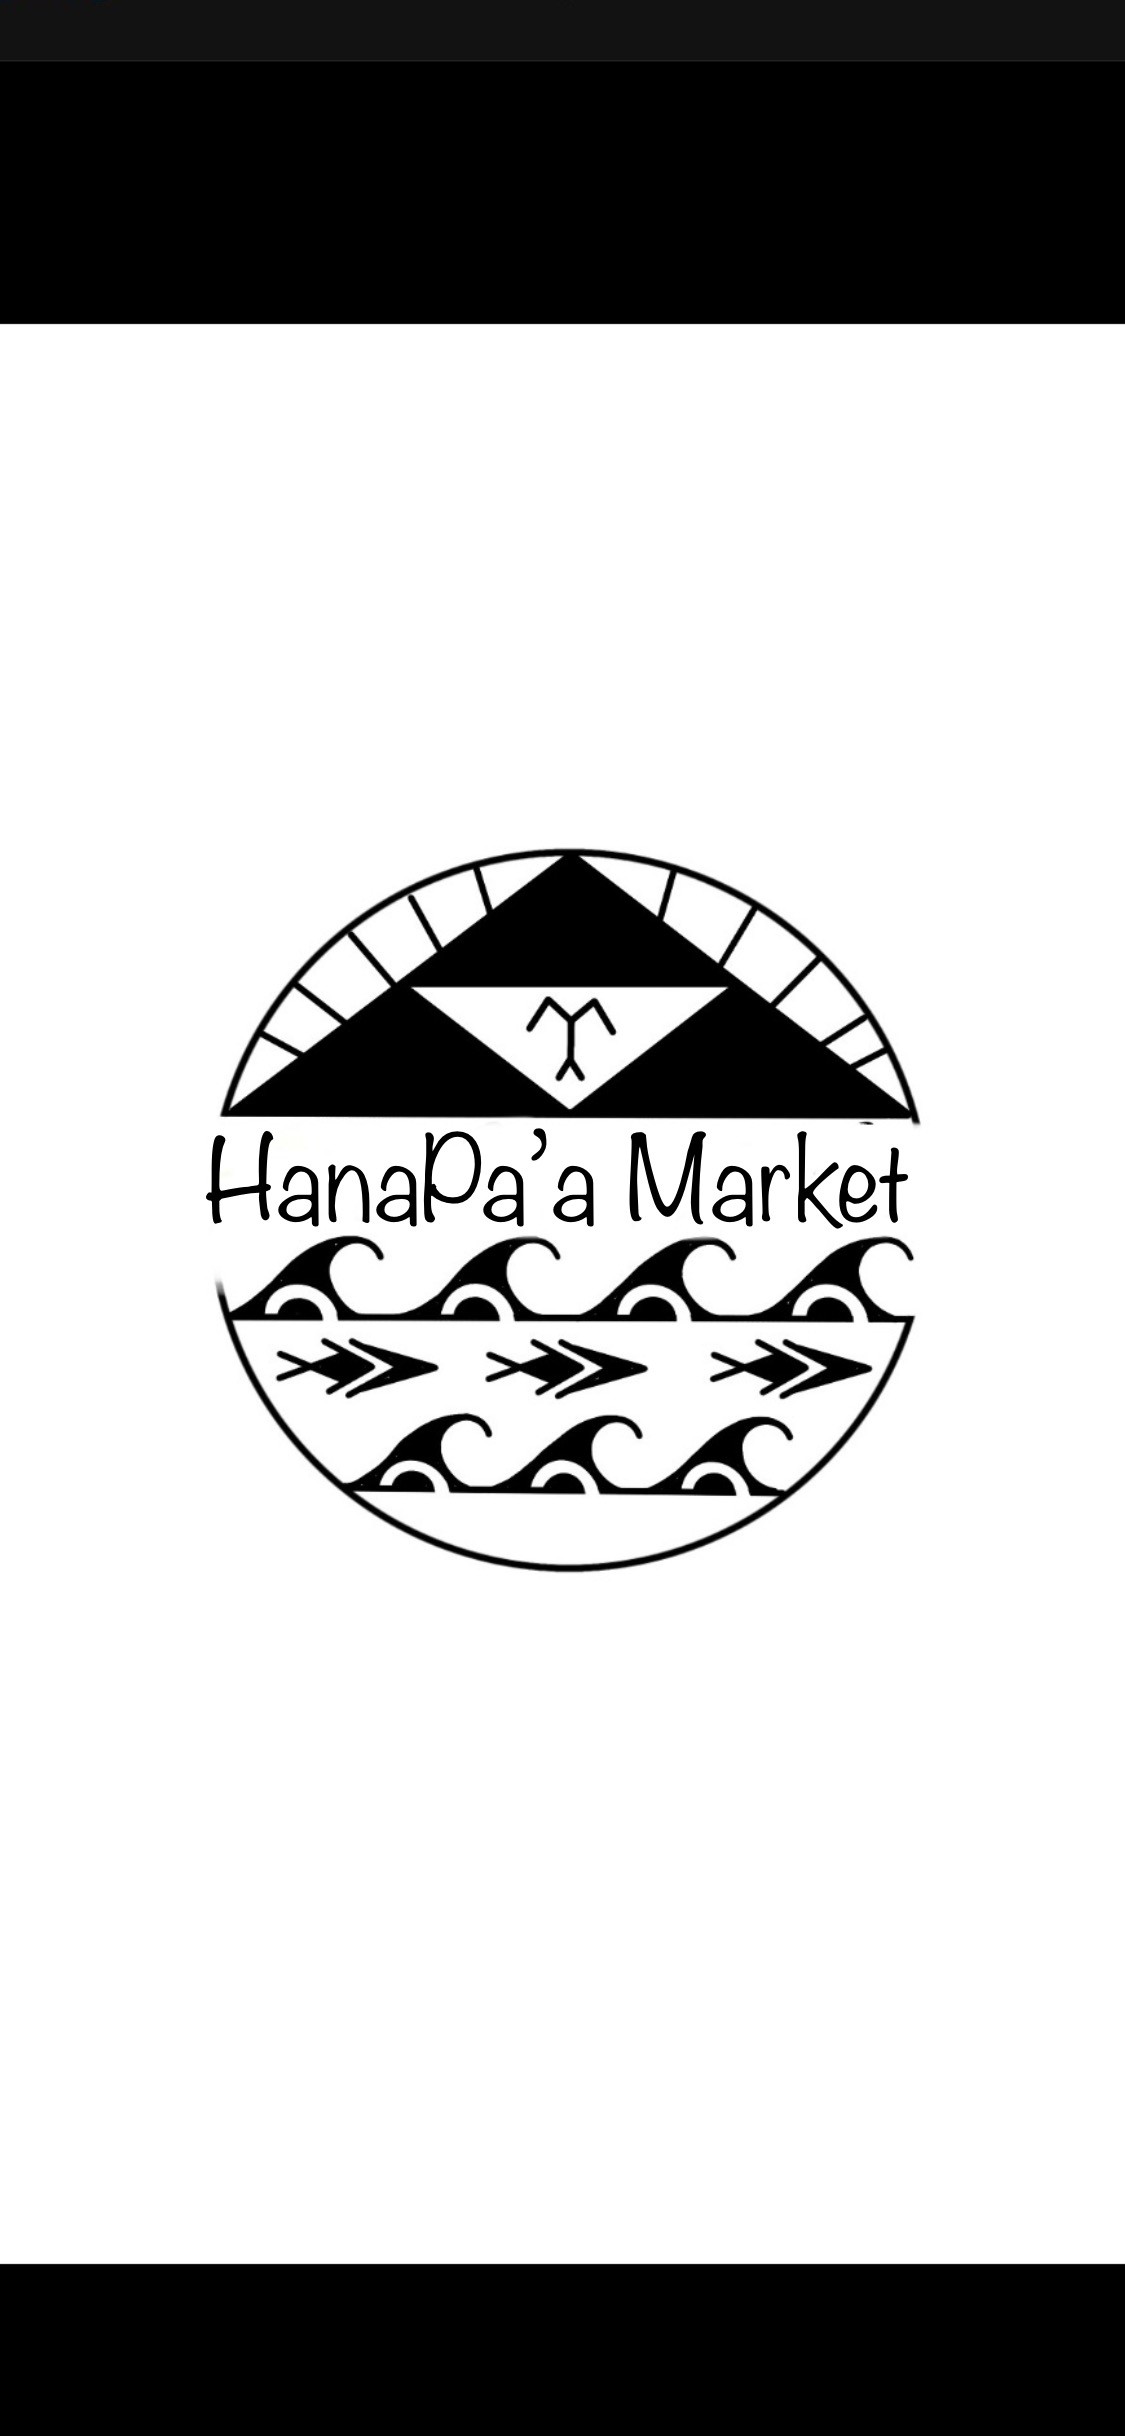 HanaPa’a Market 7192 Kalanianaole highway #E123a